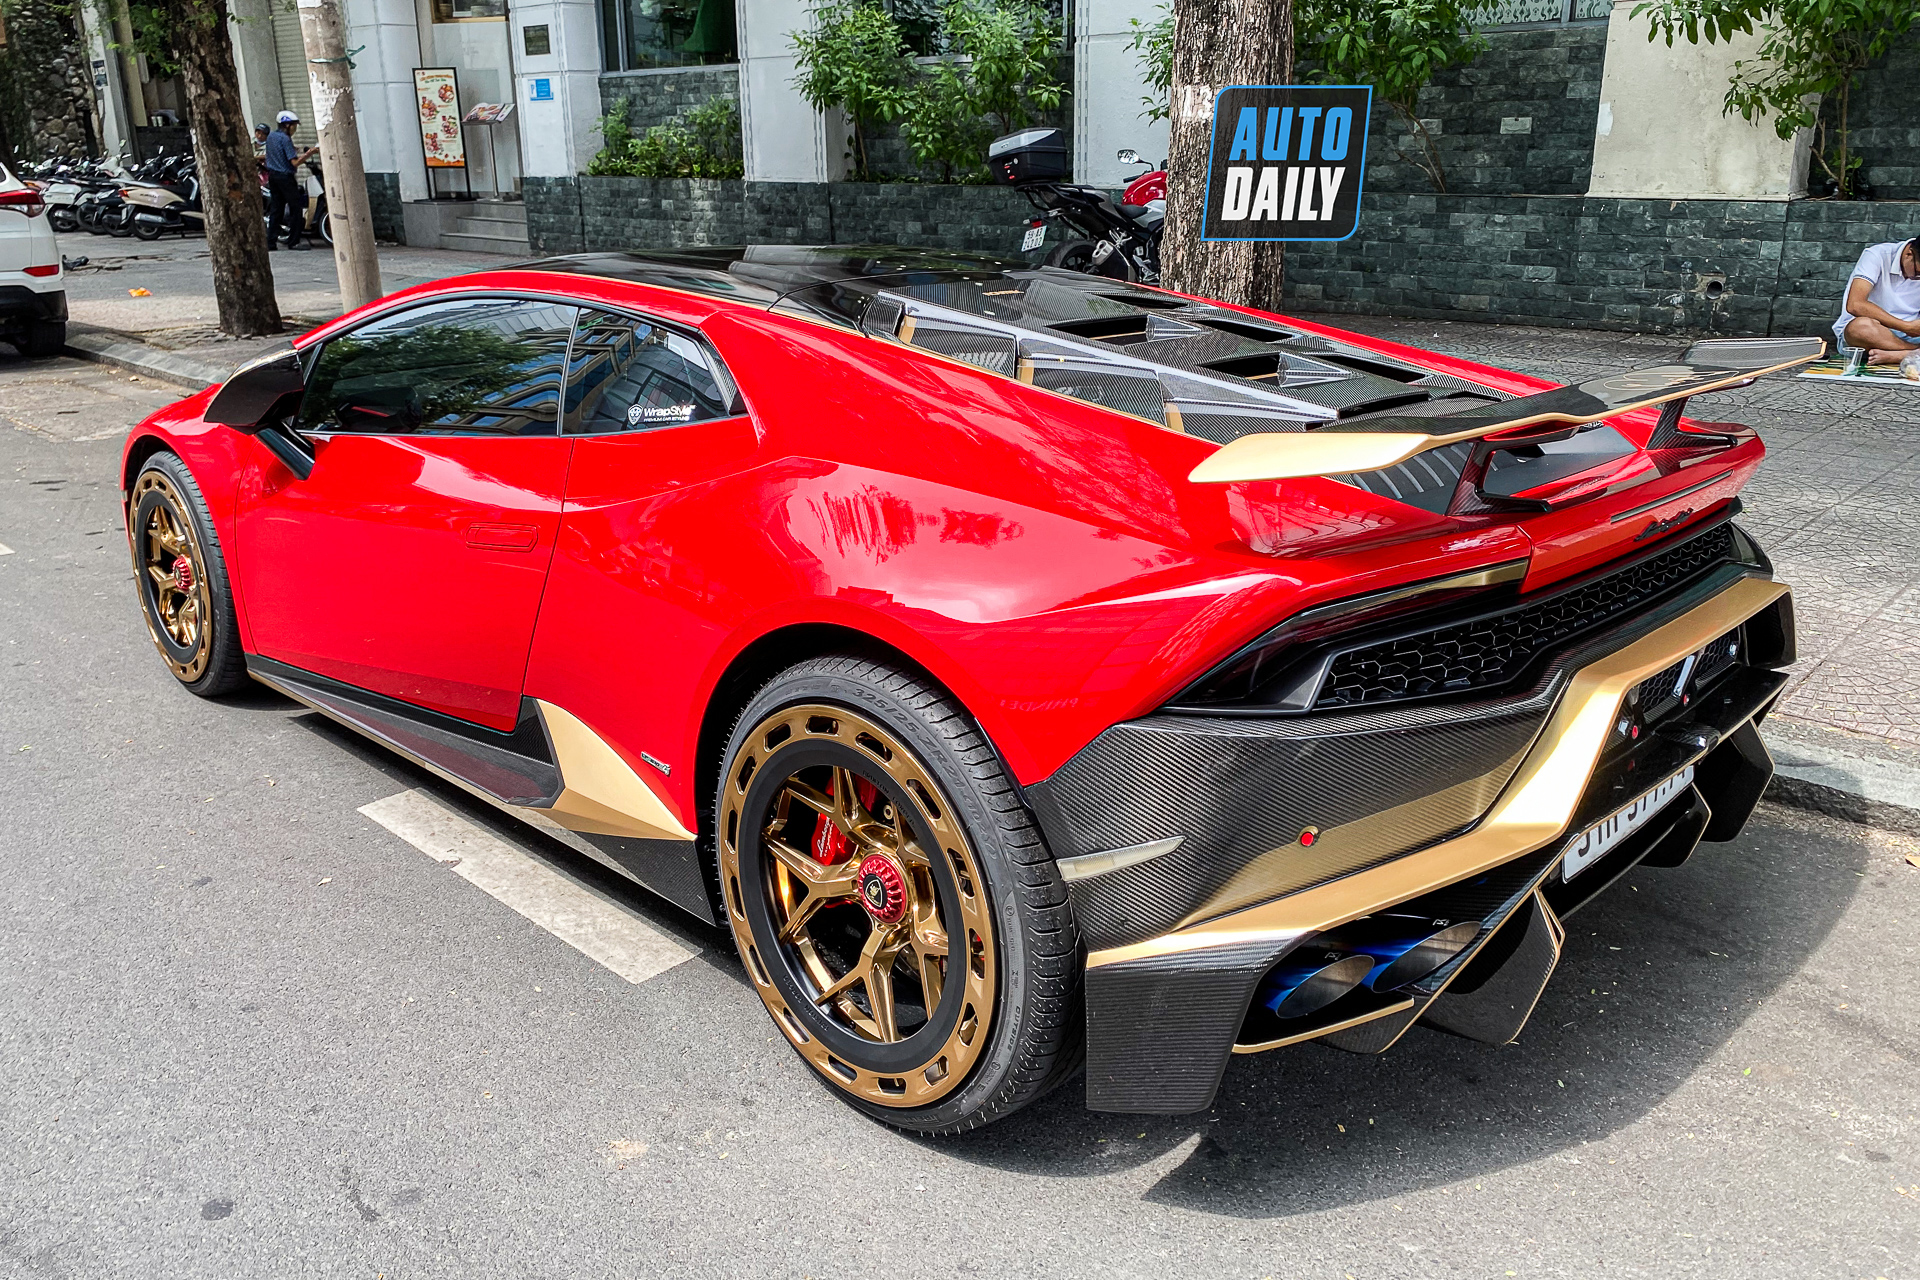 Bắt gặp Lamborghini Huracan độ khủng của đại gia Sài Gòn, bộ mâm hàng thửa giá hàng trăm triệu lamborghini-huracan-do-bo-mam-tram-trieu-autodaily-12.JPG